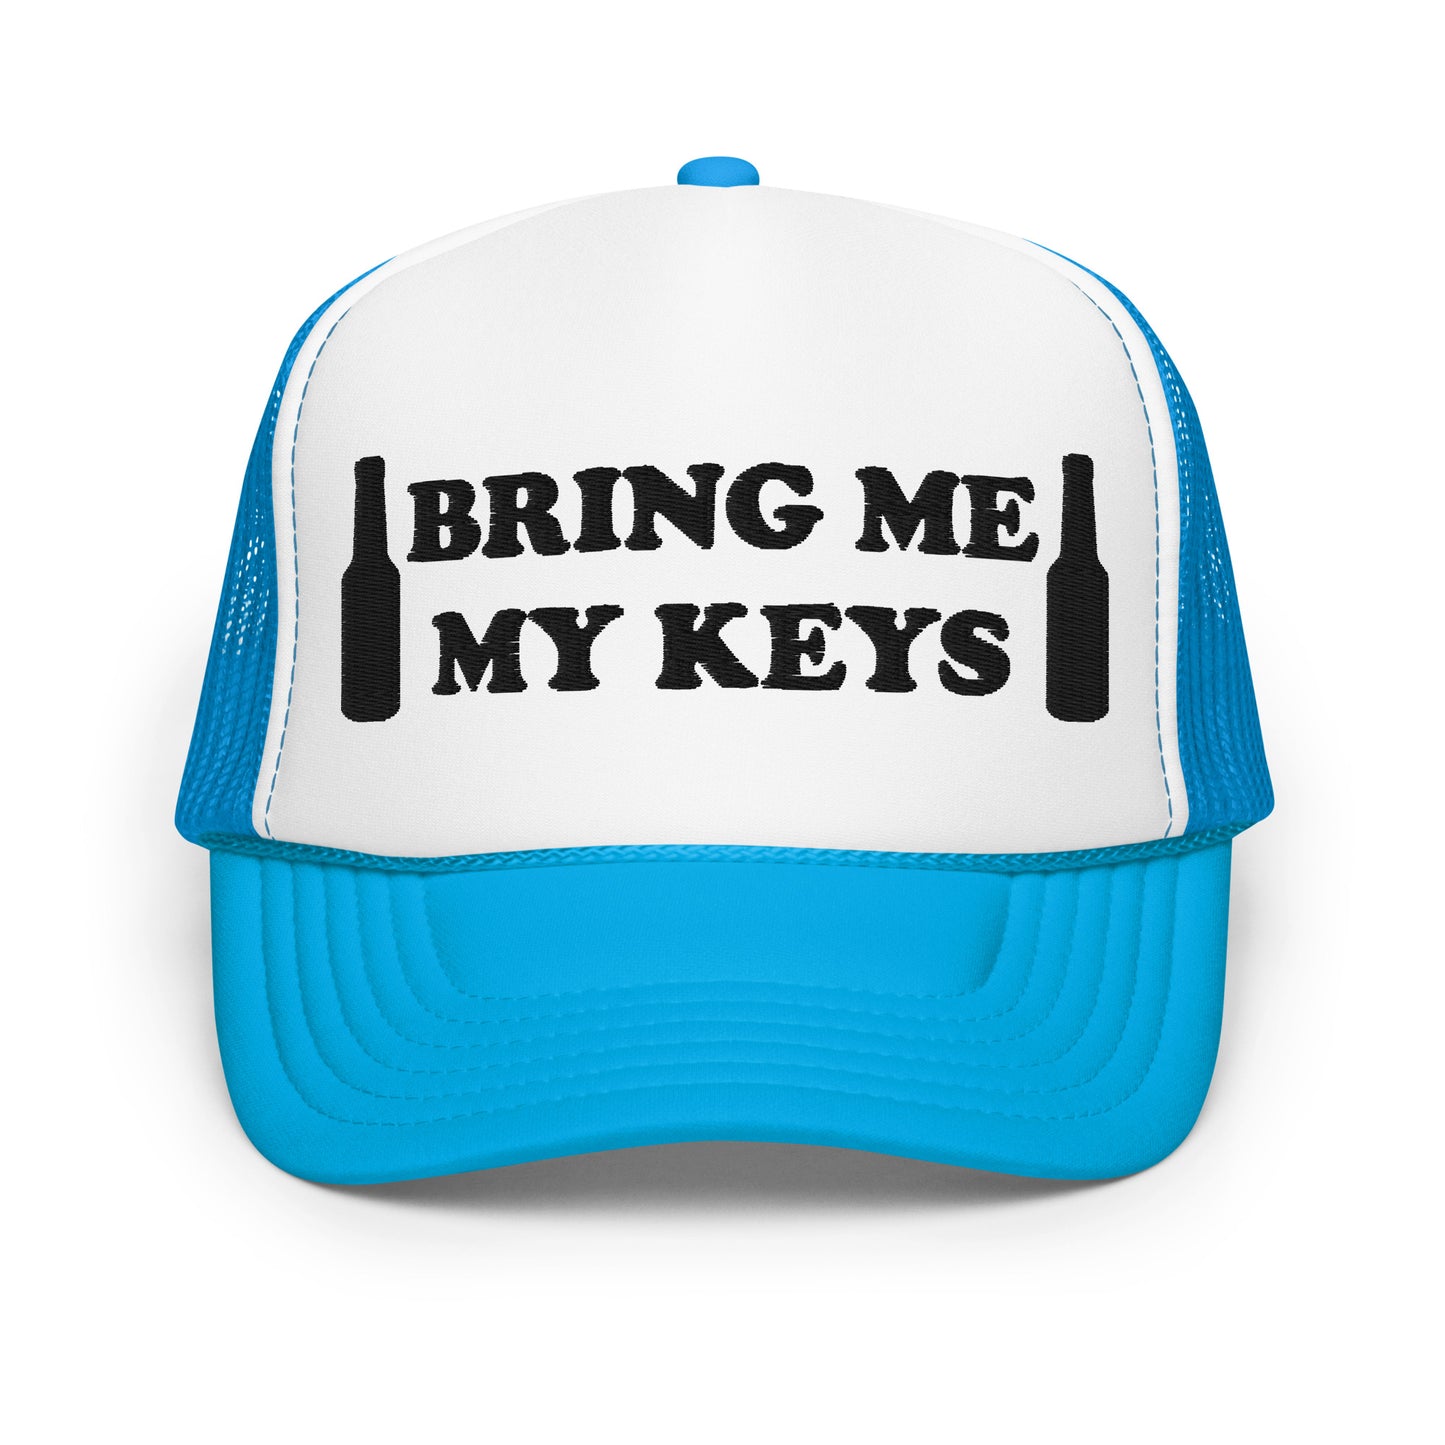 Bring Me My Keys Foam Trucker Hat